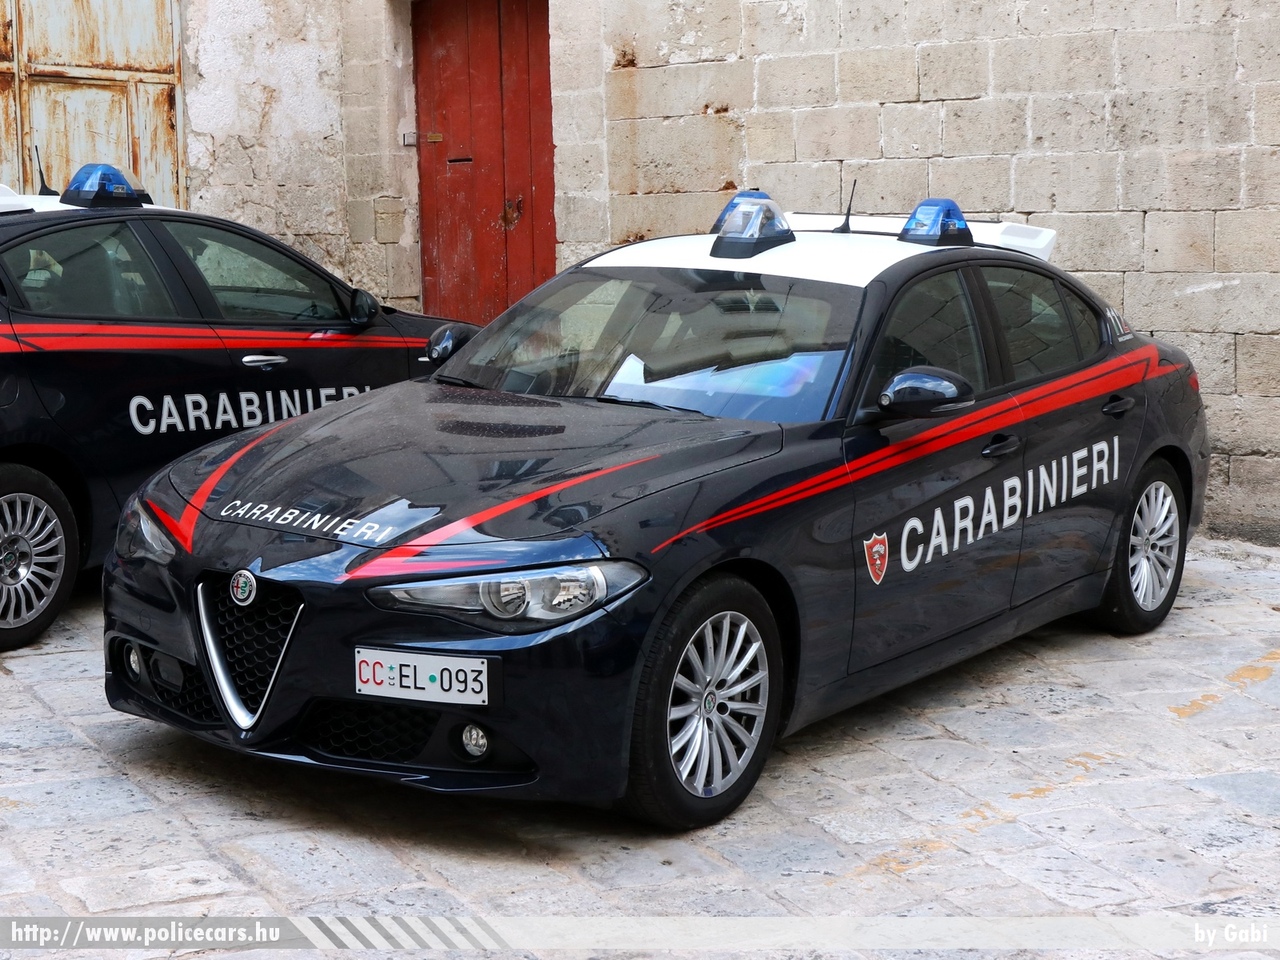 Alfa Romeo Giulia, Carabinieri, fotó: Gabi
Keywords: rendőr rendőrautó rendőrség olasz Olaszország police policecar Italy italian katonai rendészet military